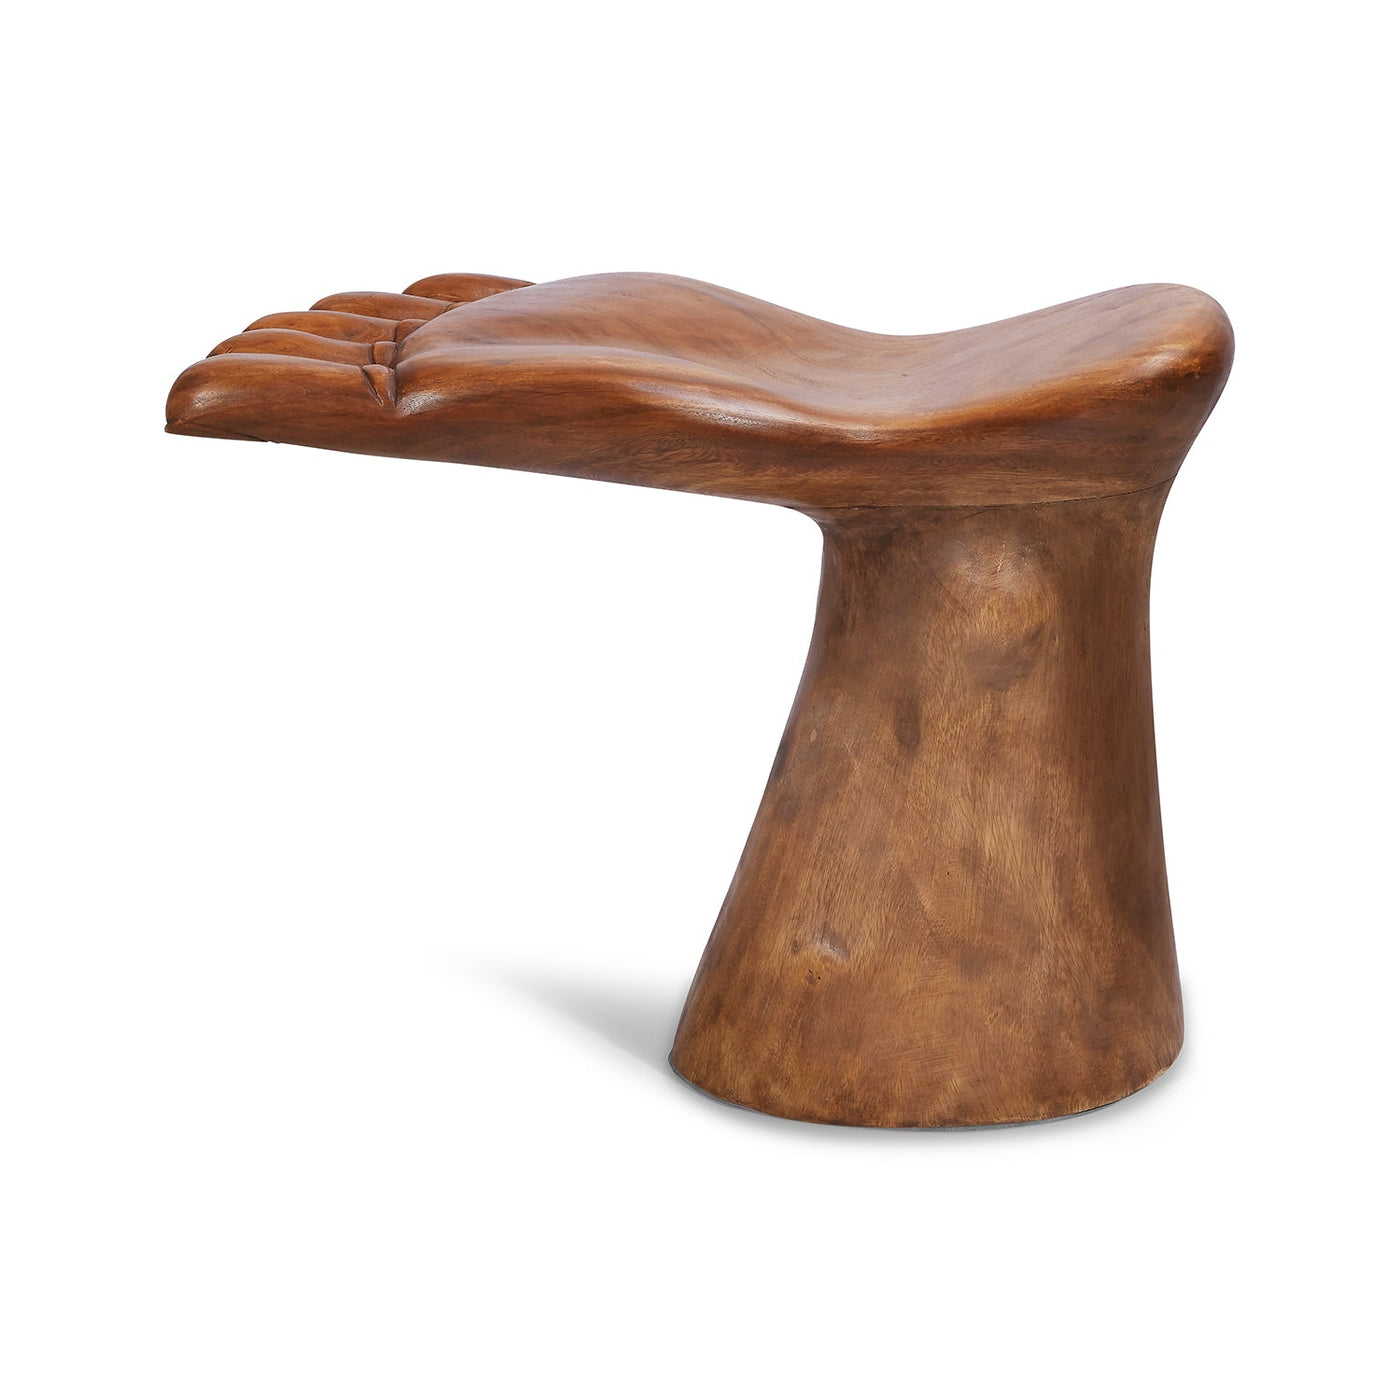 Foot Chair Wood Furniture Chefanie 